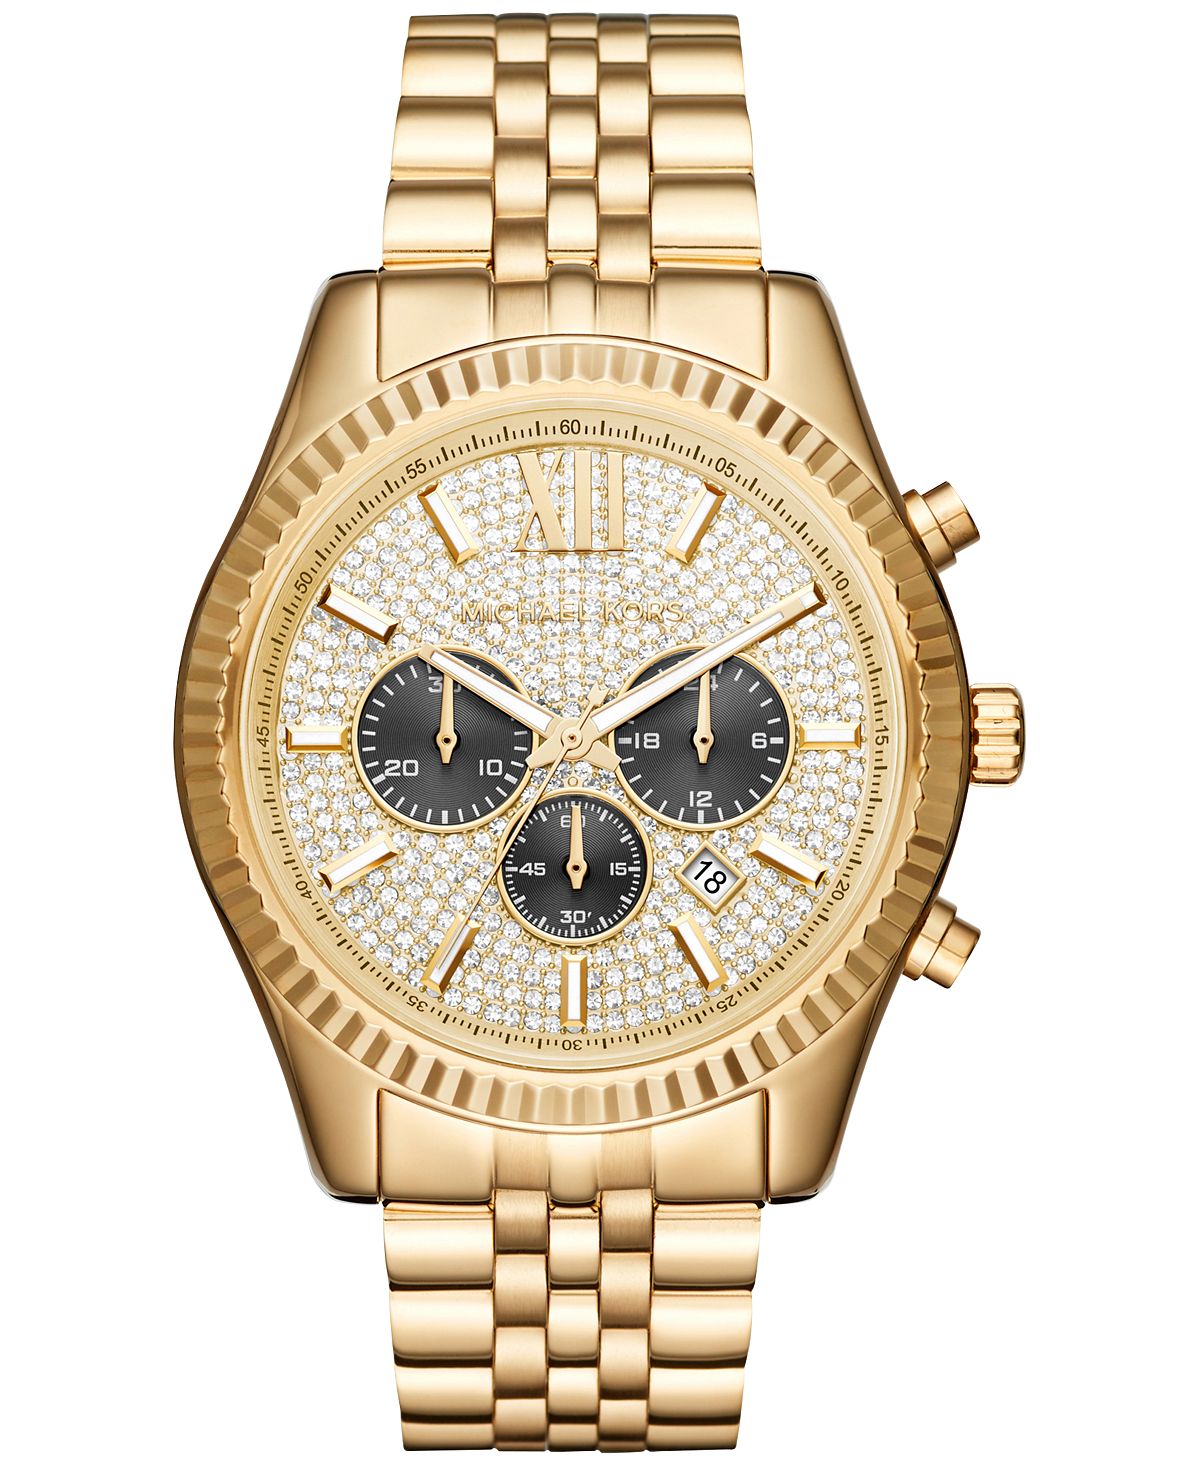 Мужские часы-хронограф Lexington с золотистым браслетом из нержавеющей стали, 44 мм, MK8494 Michael Kors цена и фото